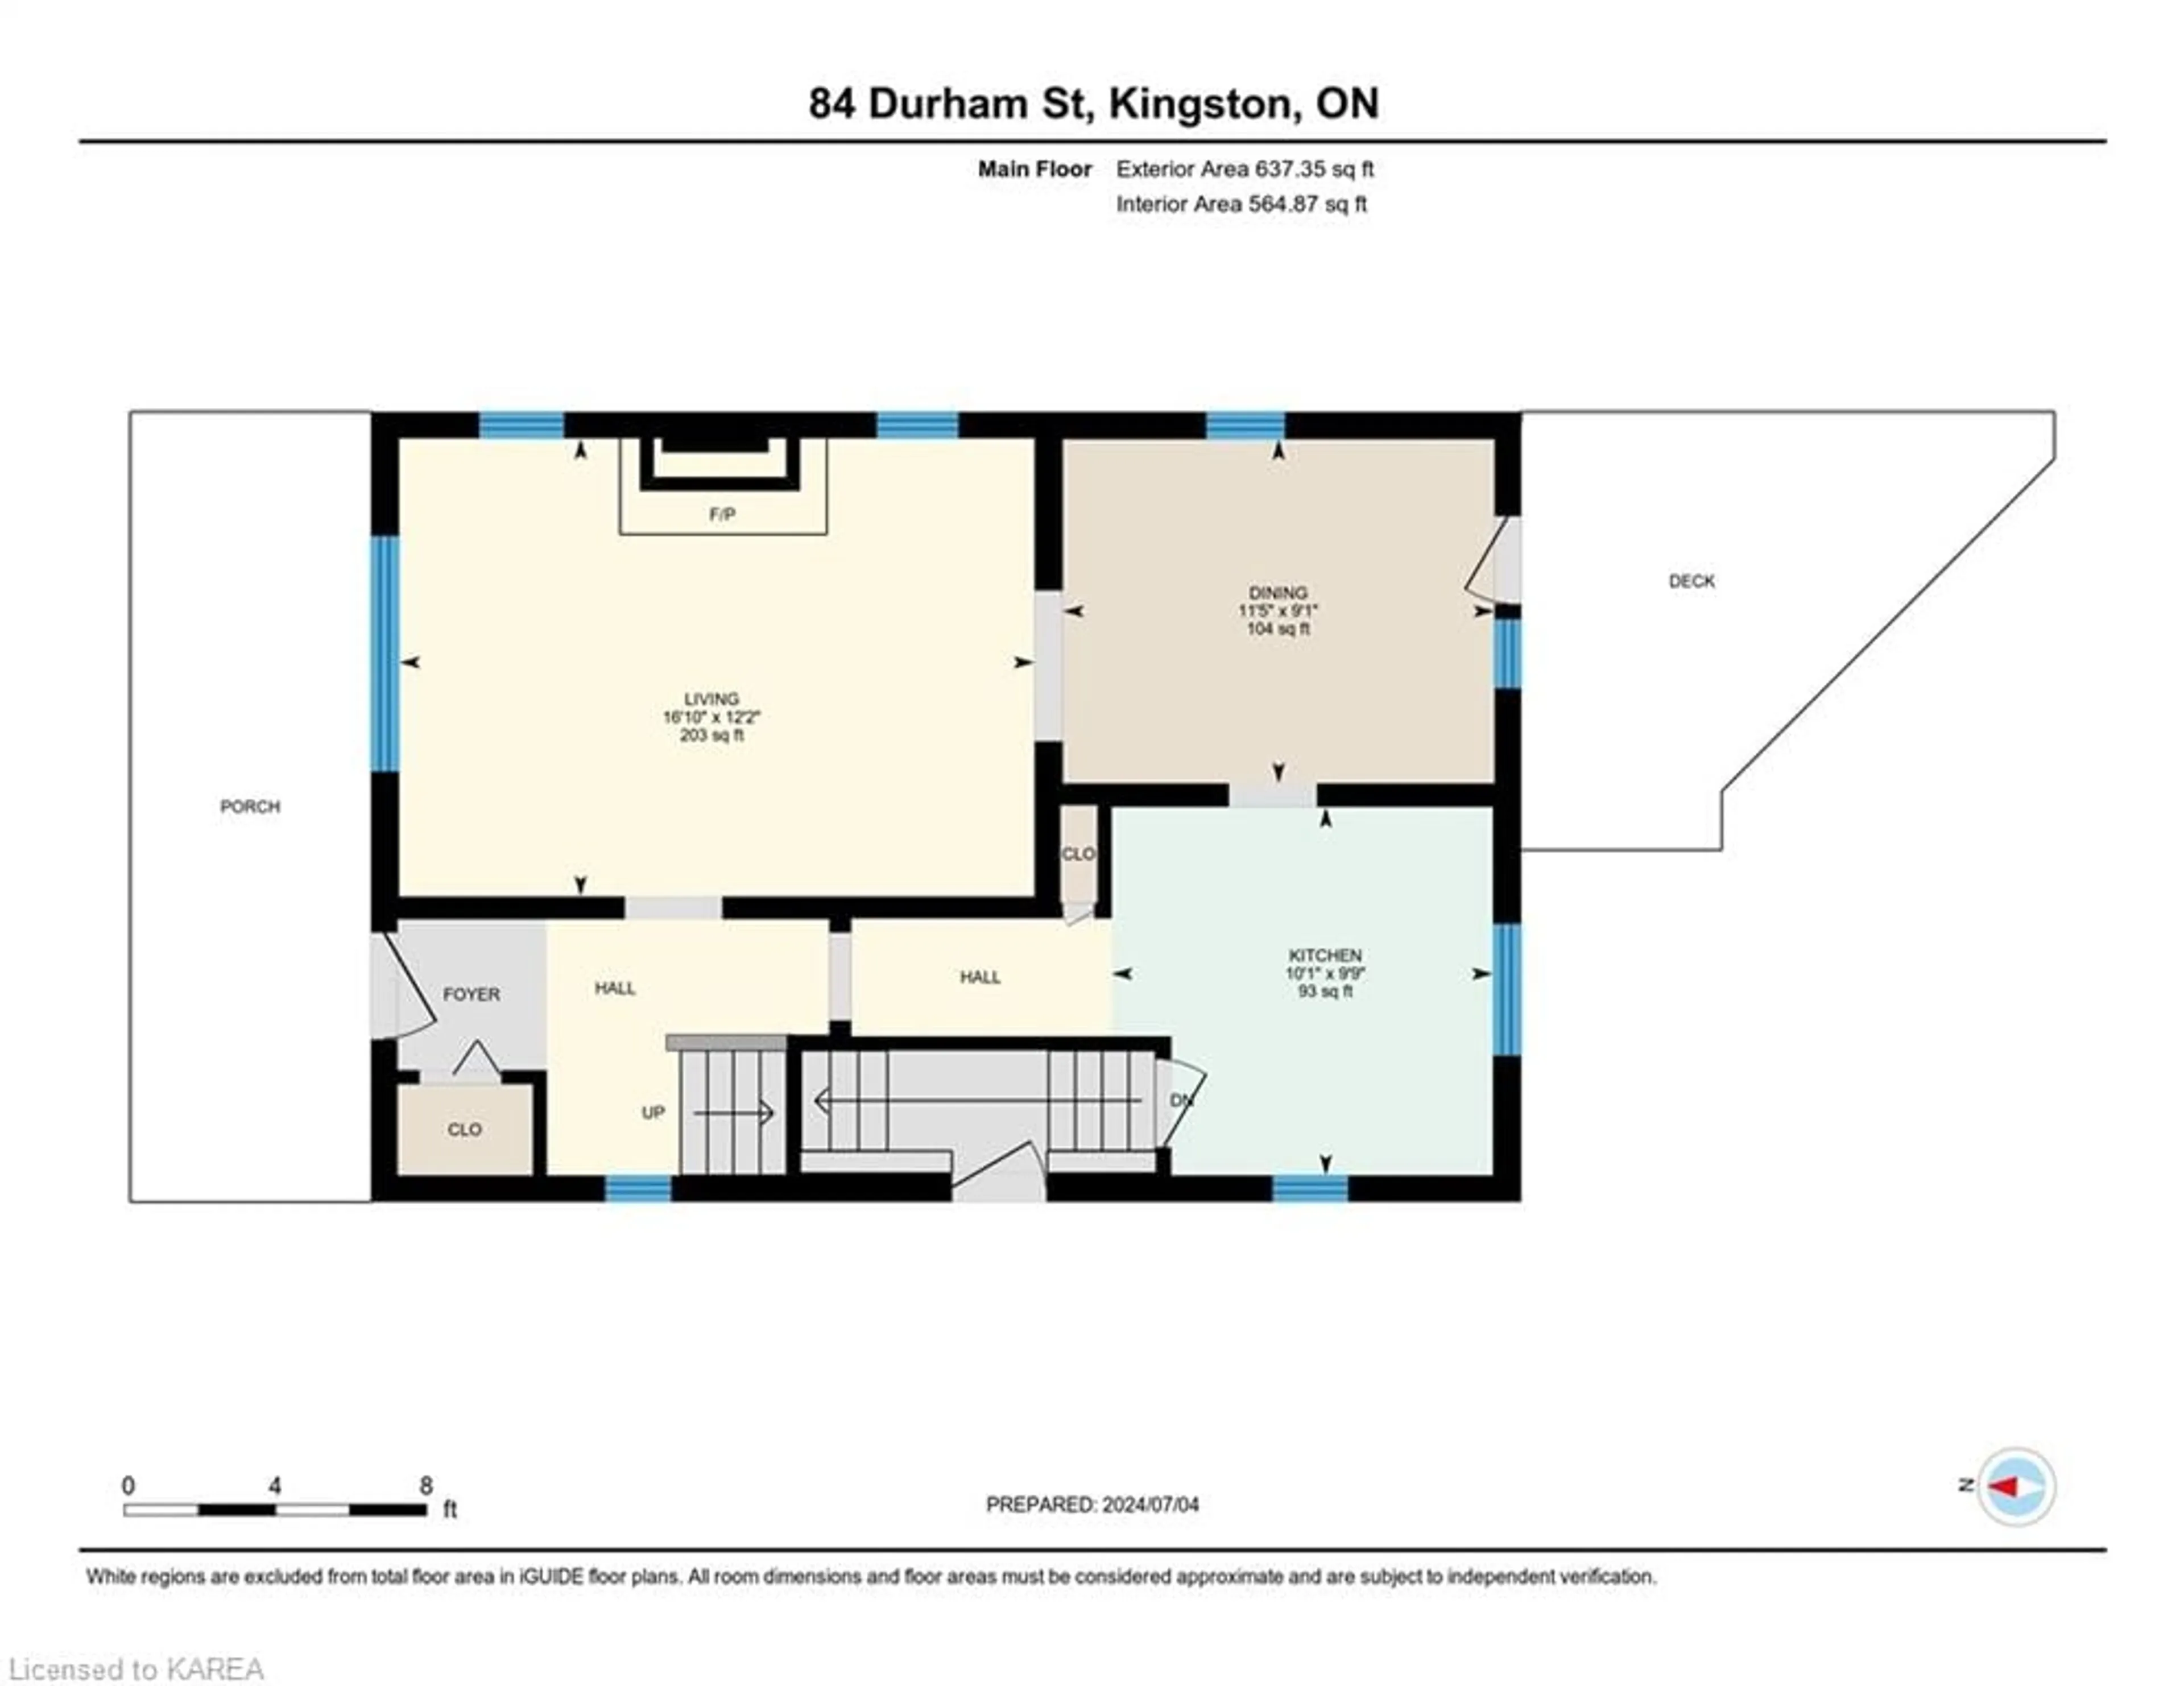 Floor plan for 84 Durham St, Kingston Ontario K7L 1J4